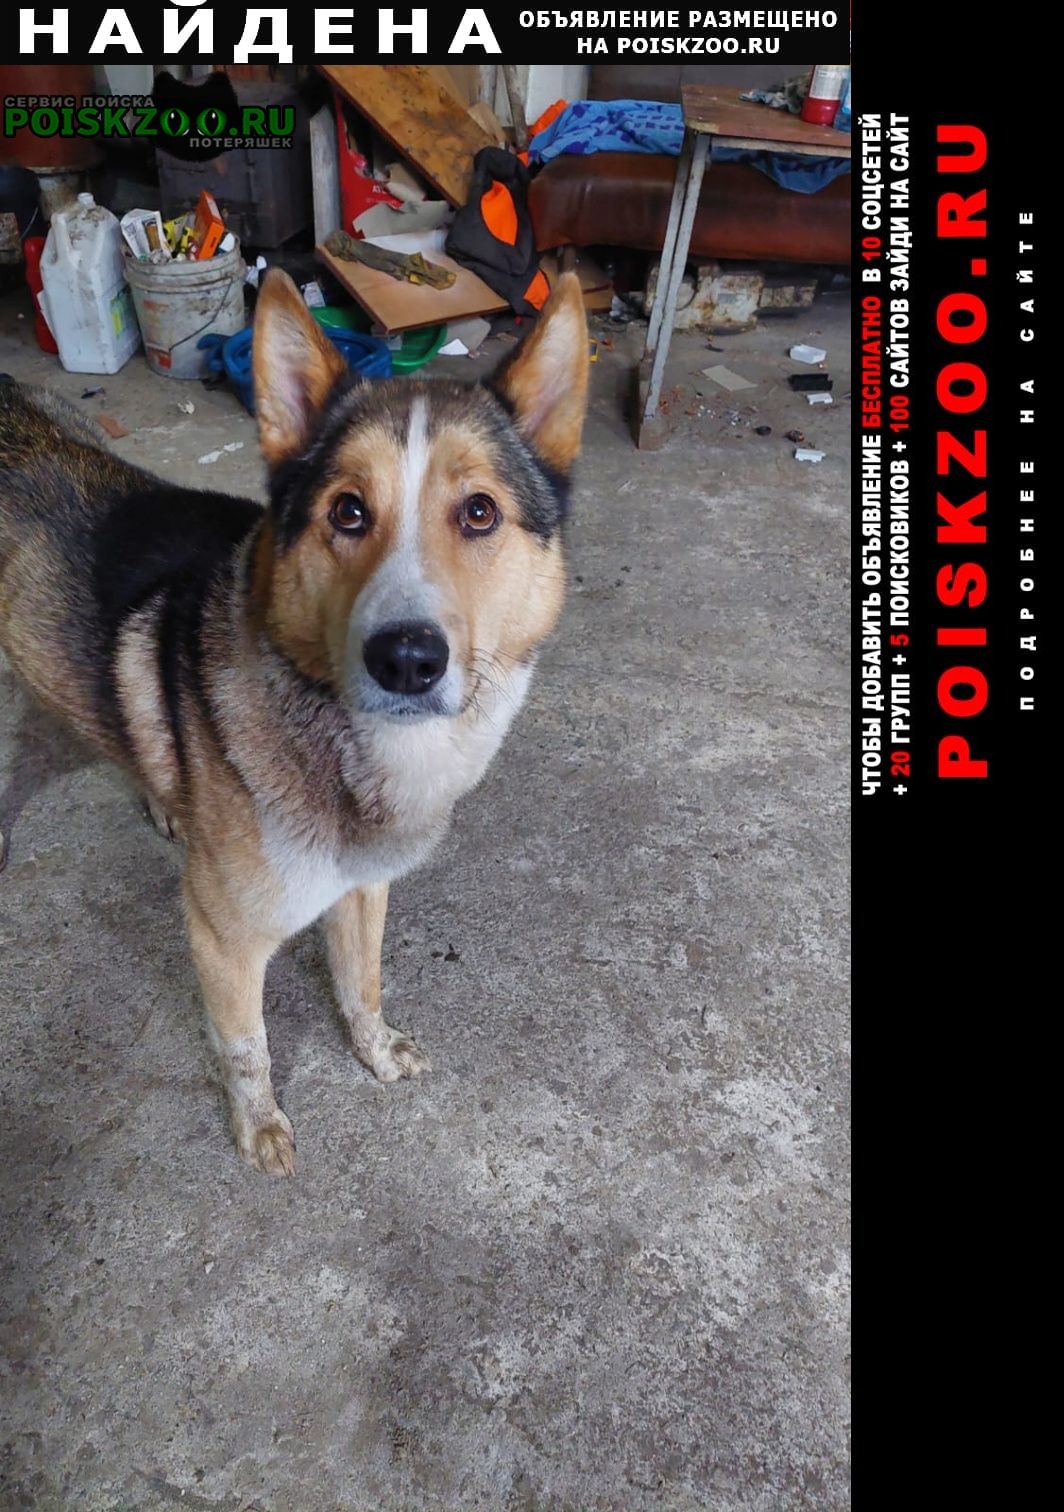 Найдена собака кобель молодой пес, явно домашний Петропавловск-Камчатский